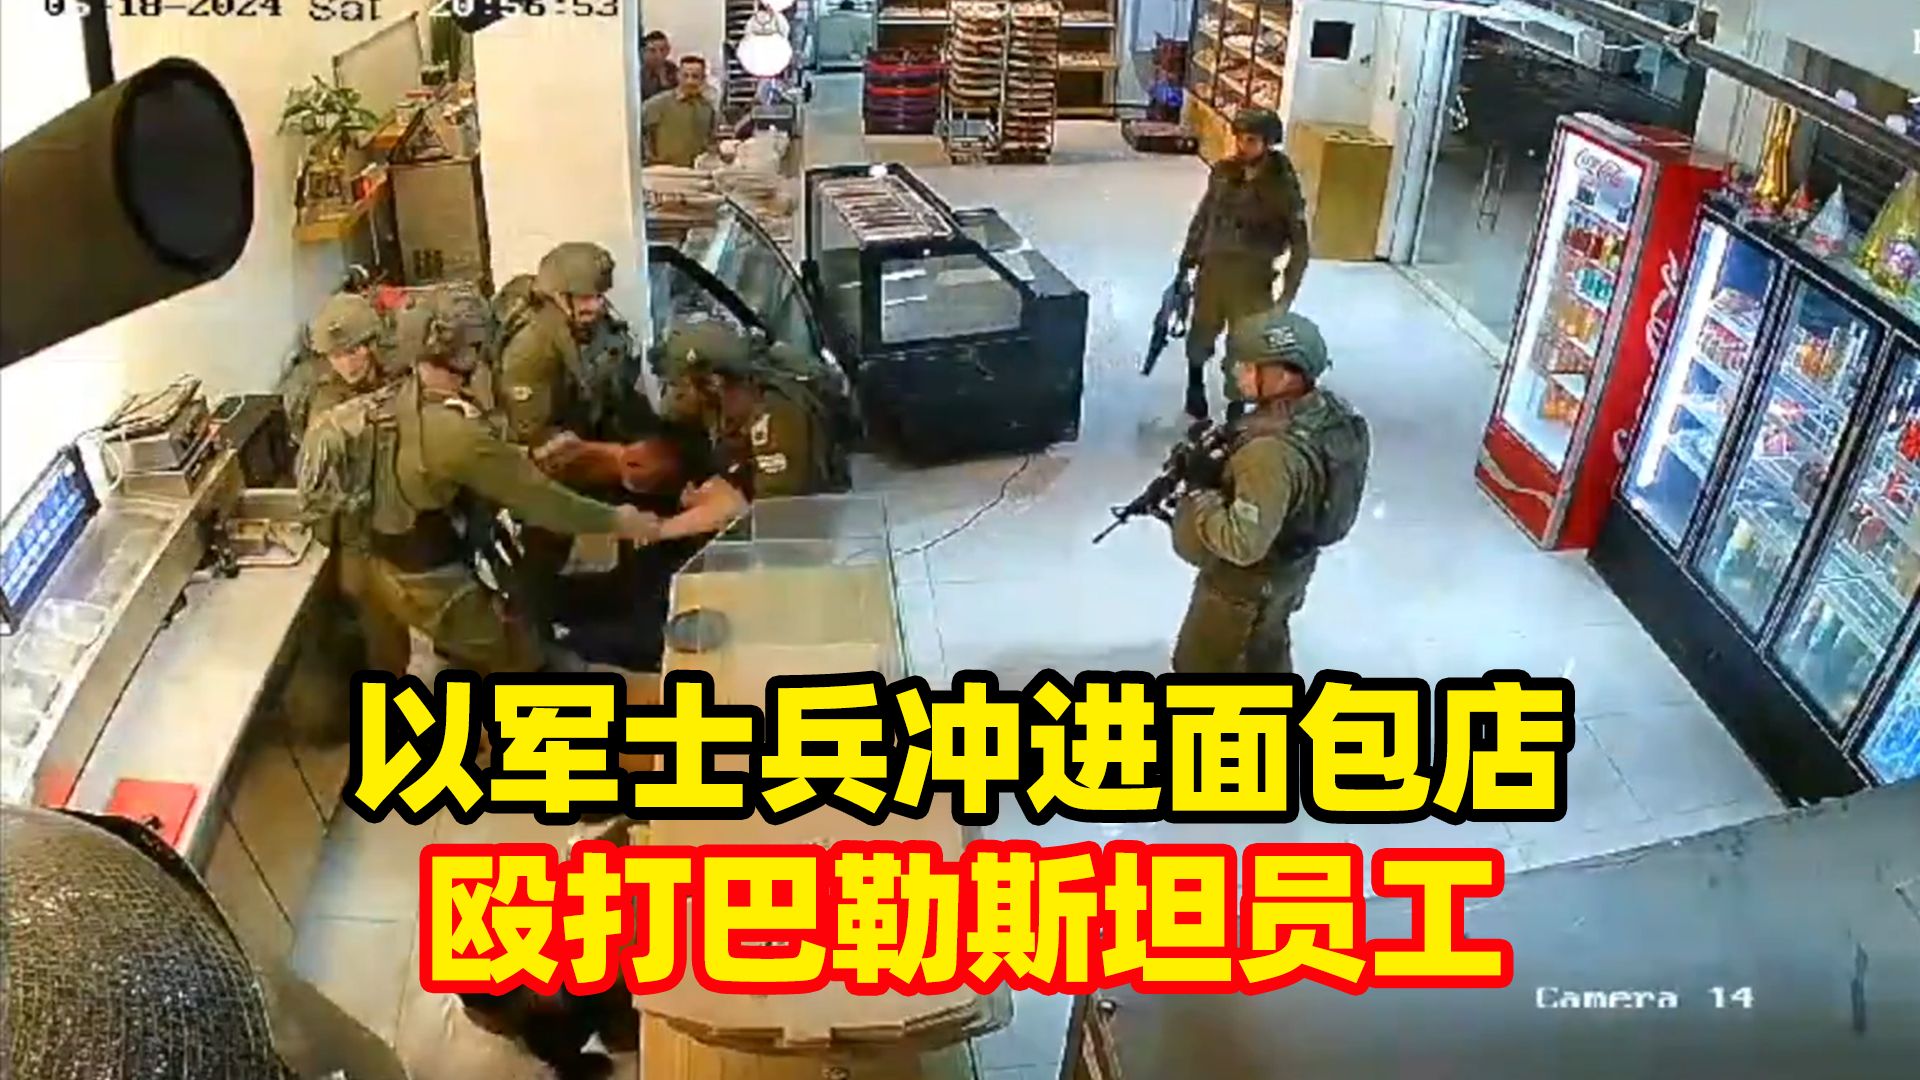 士兵冲进面包店,殴打巴勒斯坦员工:认为店内其中一人向他们扔石头